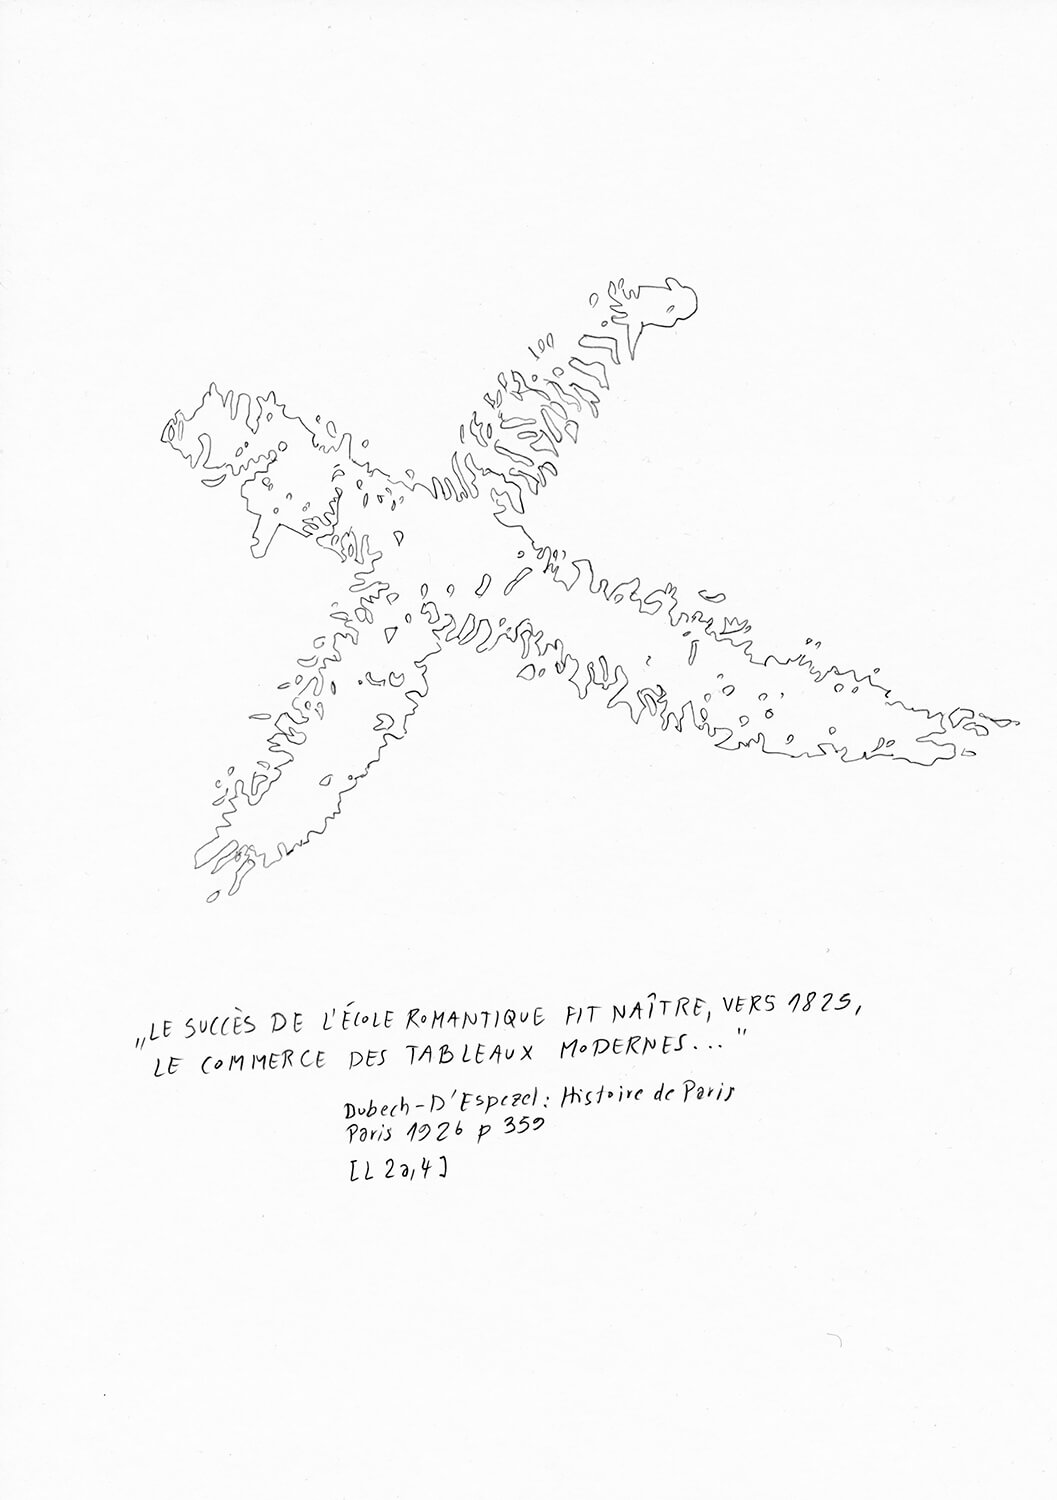 Matthias Beckmann, Passagen-Werk (33), 2019/2020, pencil on paper, 29,7 x 21 cm